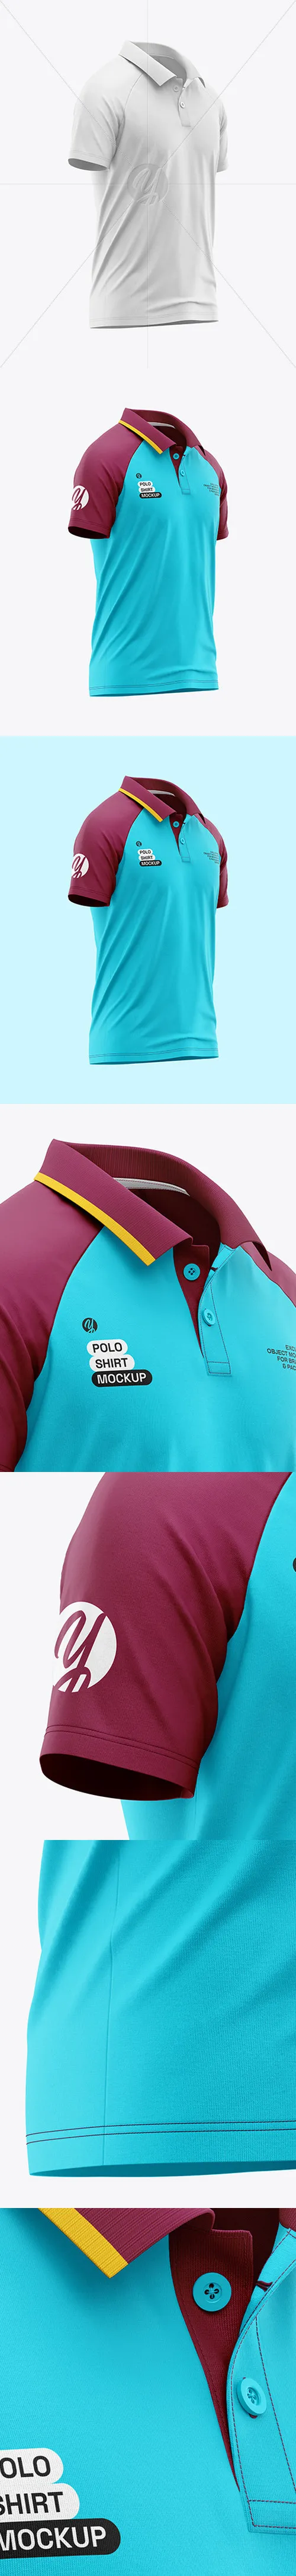 Raglan Polo Shirt Mockup 133234